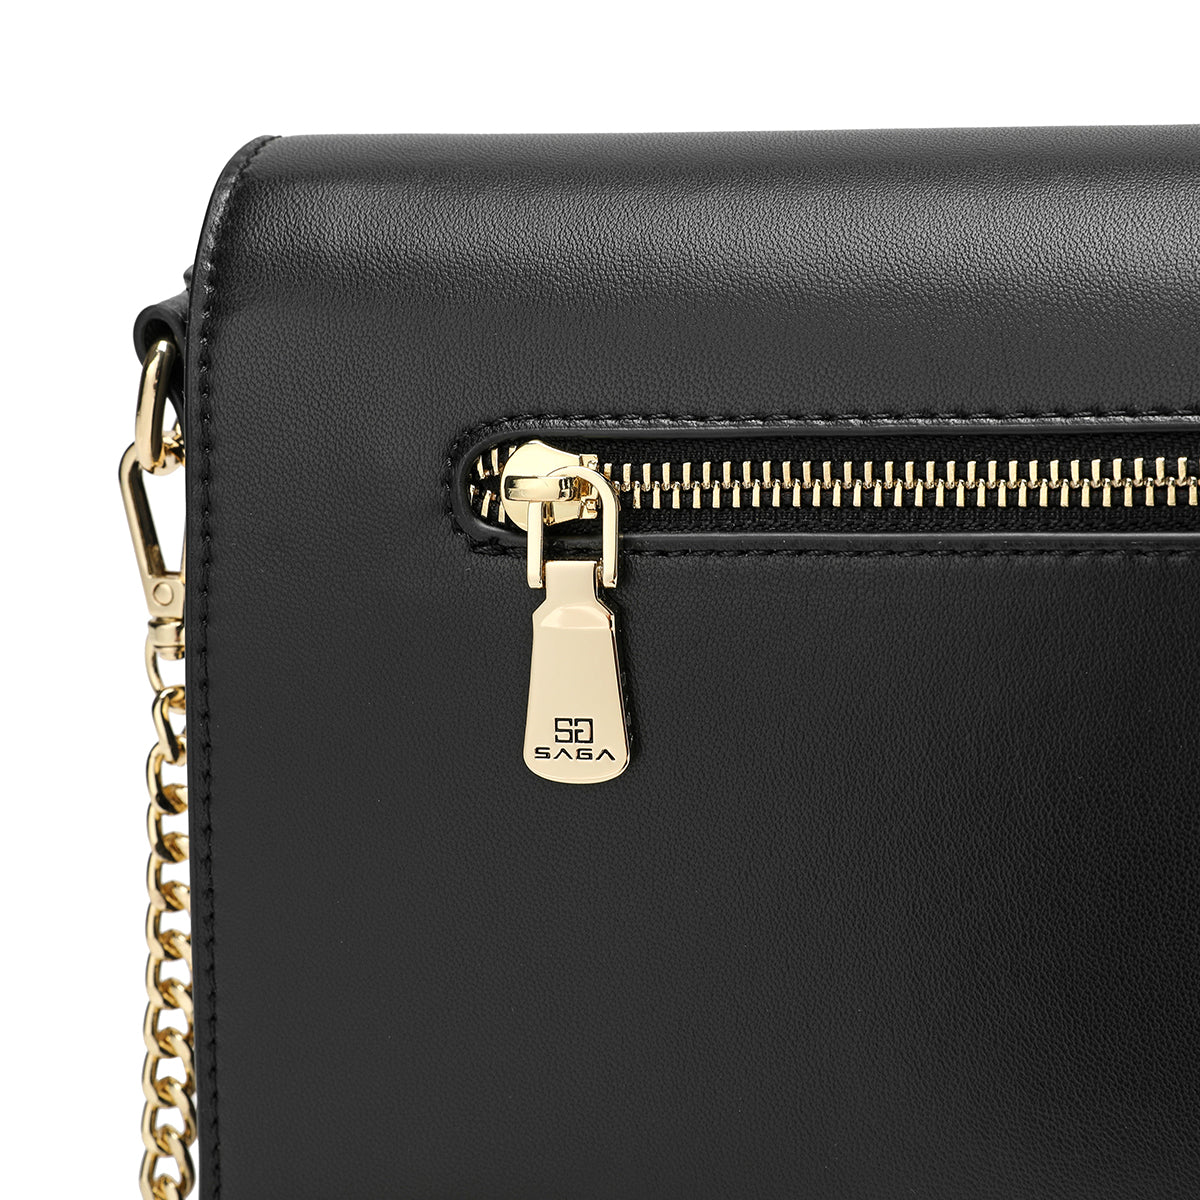 A luxurious handbag made of 100% microfiber, width 23 cm, black color